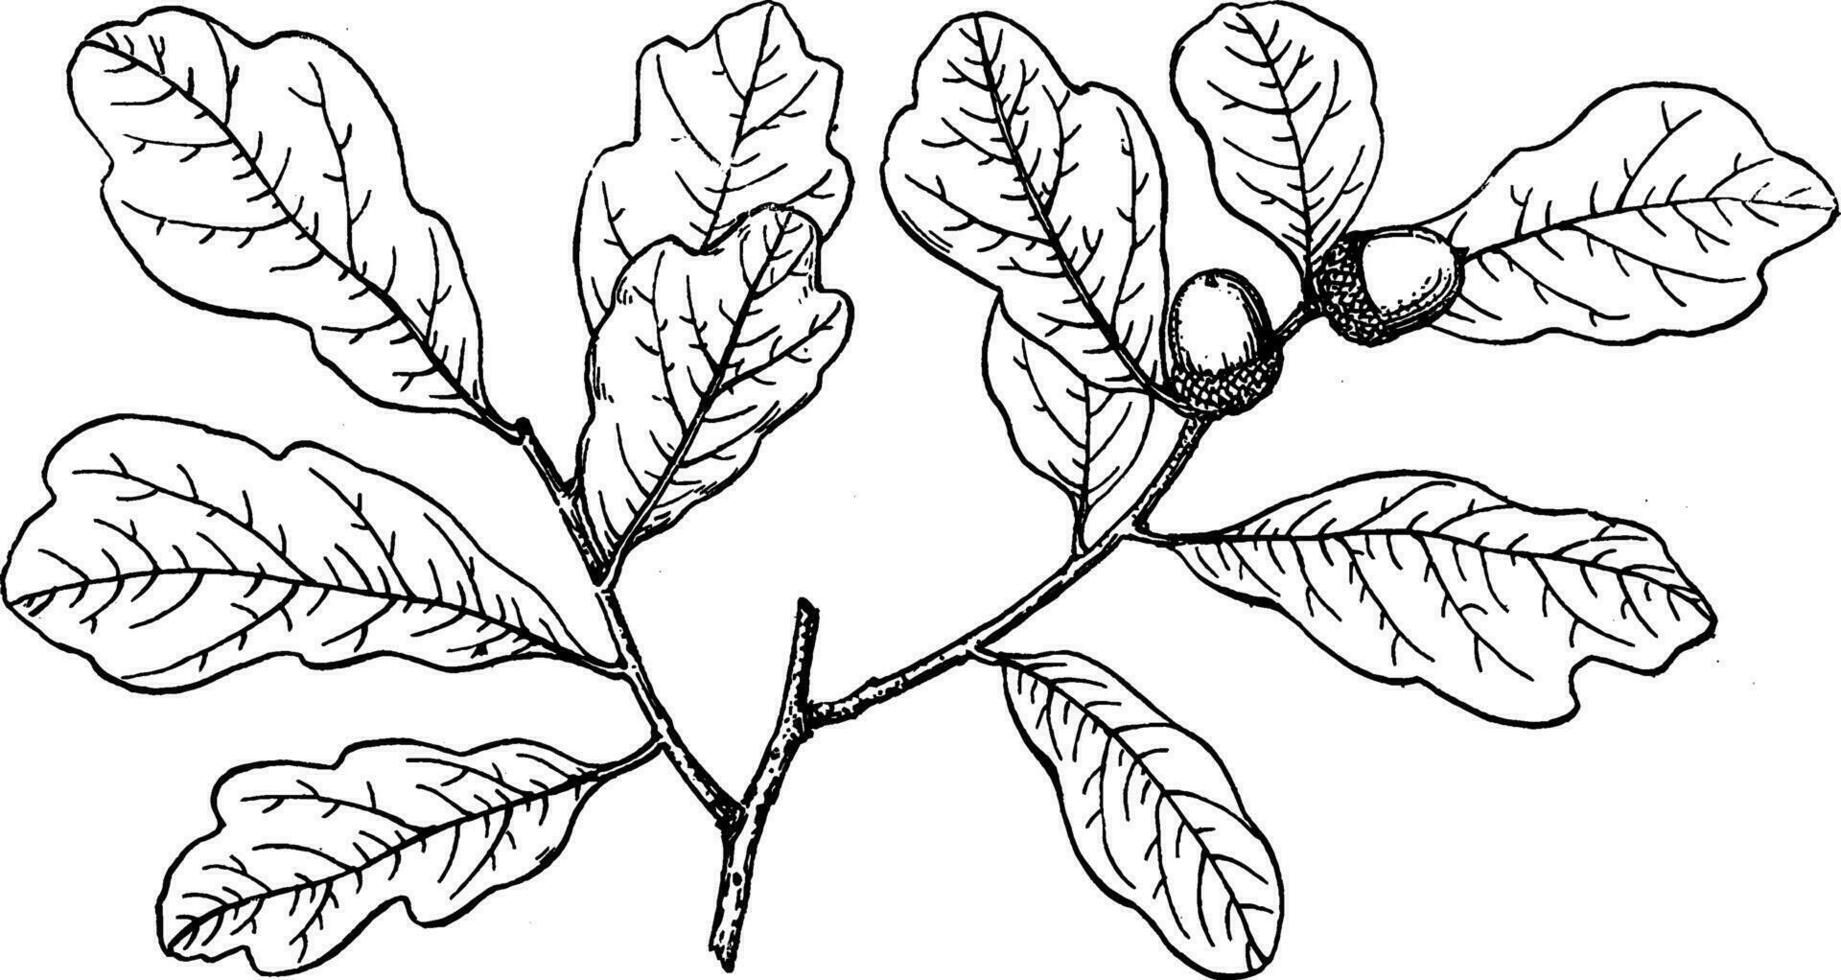 Branch of Shallow-Lobed Oak vintage illustration. vector